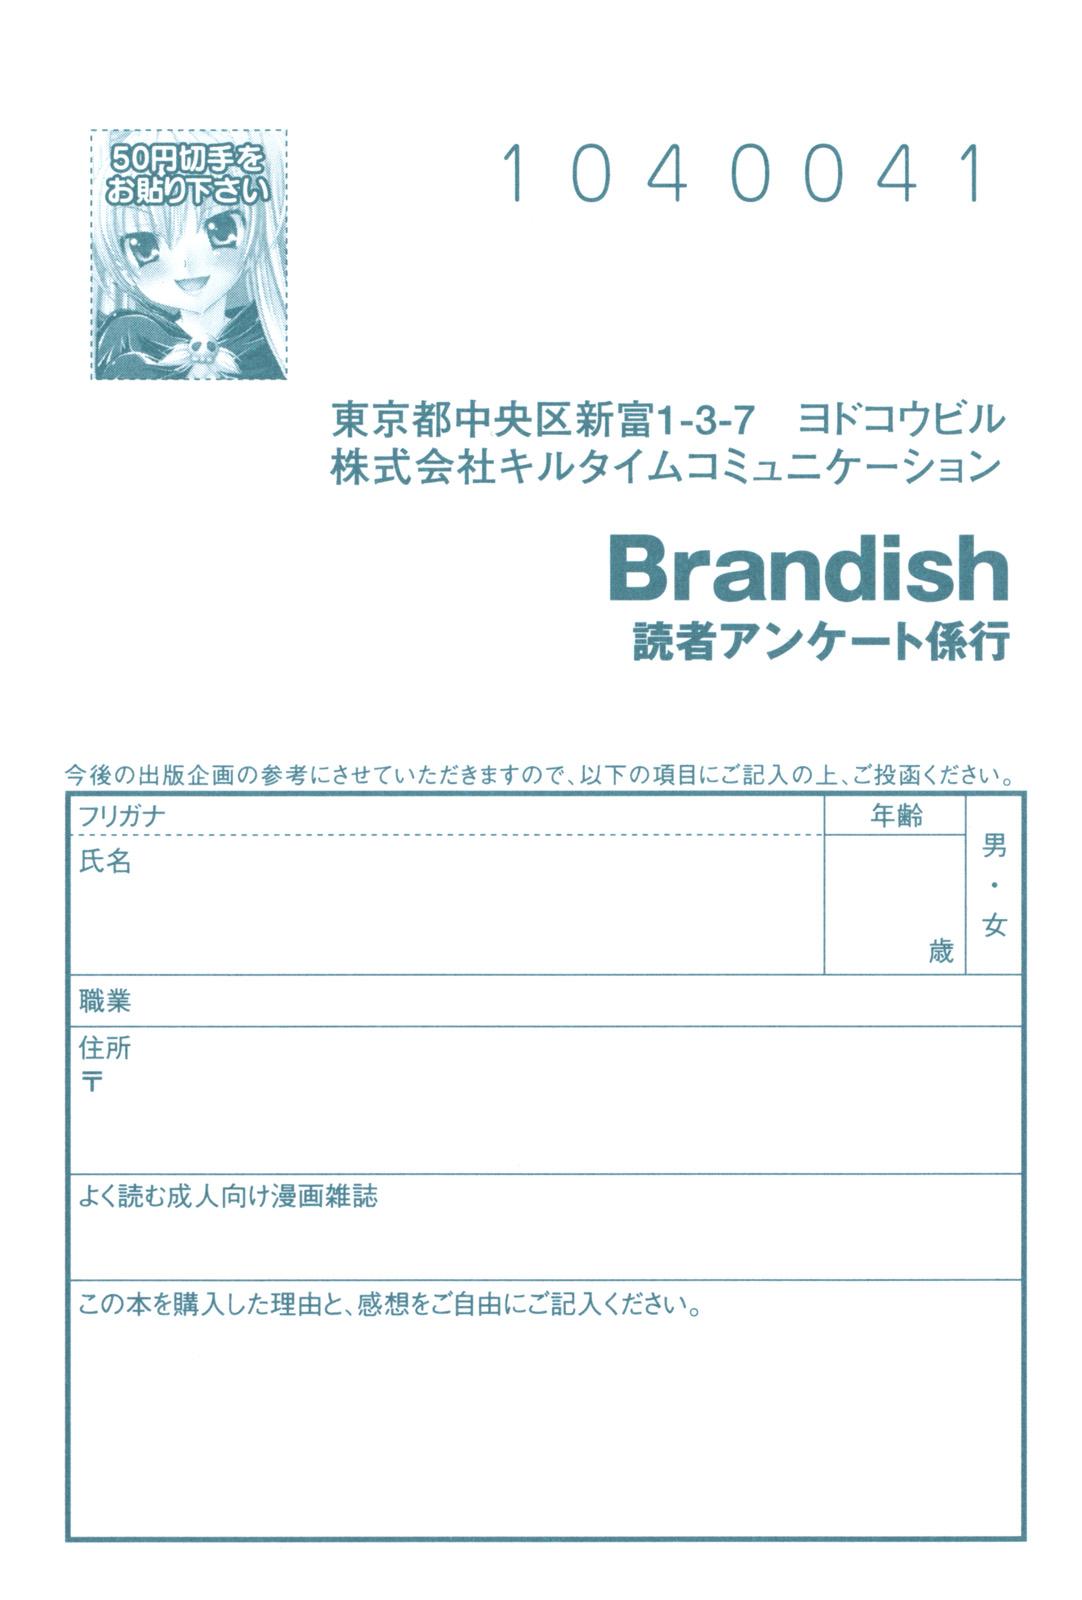 Brandish 167